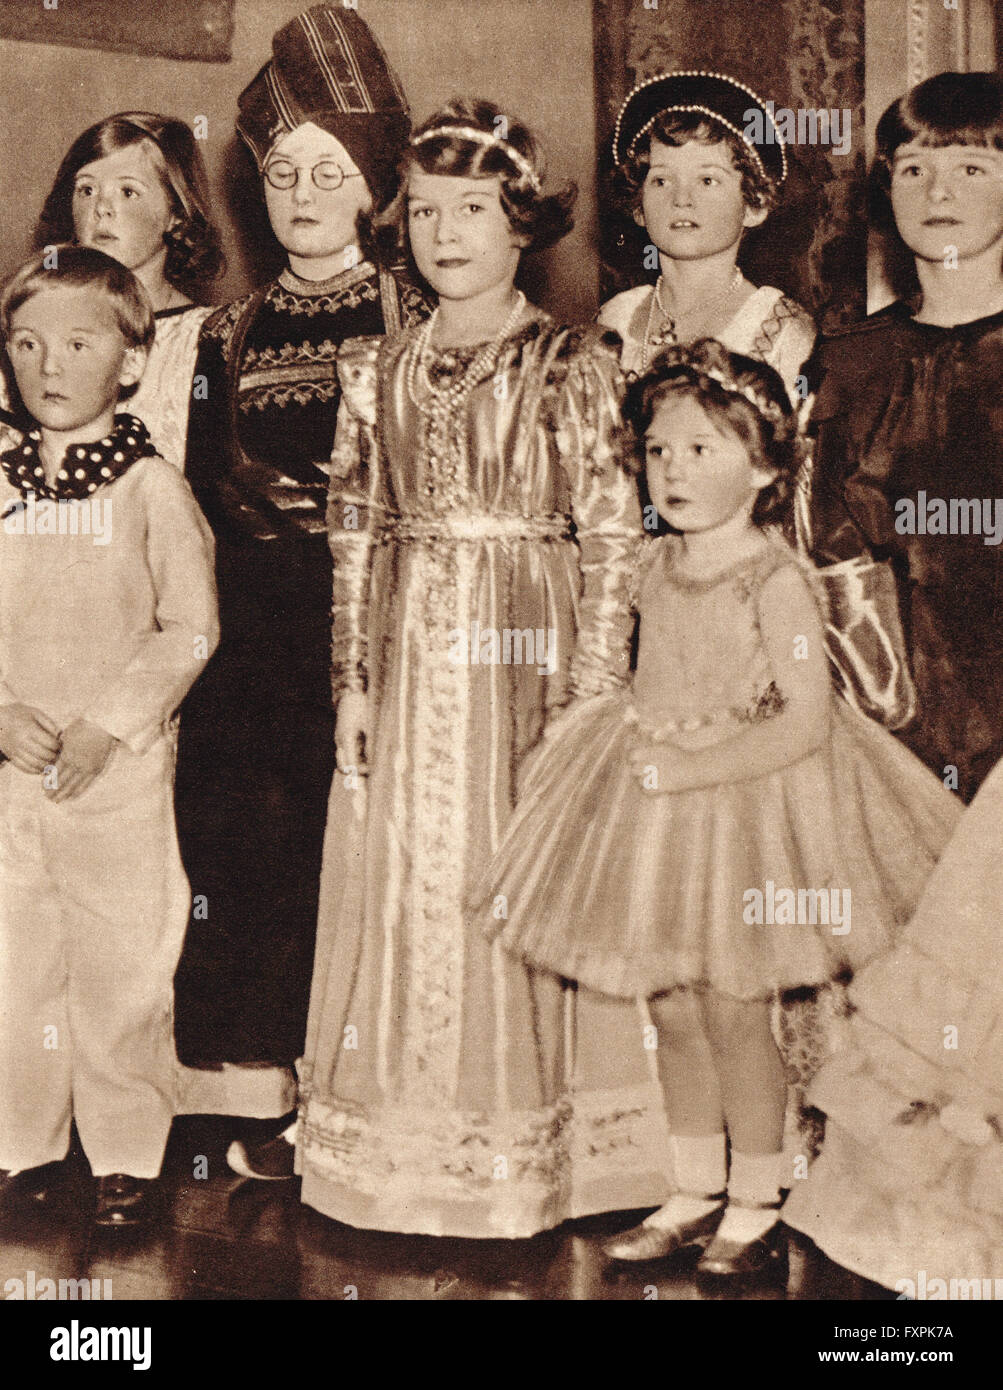 La principessa Elisabetta, la futura Regina Elisabetta II, a una festa in costume con sua sorella Margaret nel 1934 Foto Stock